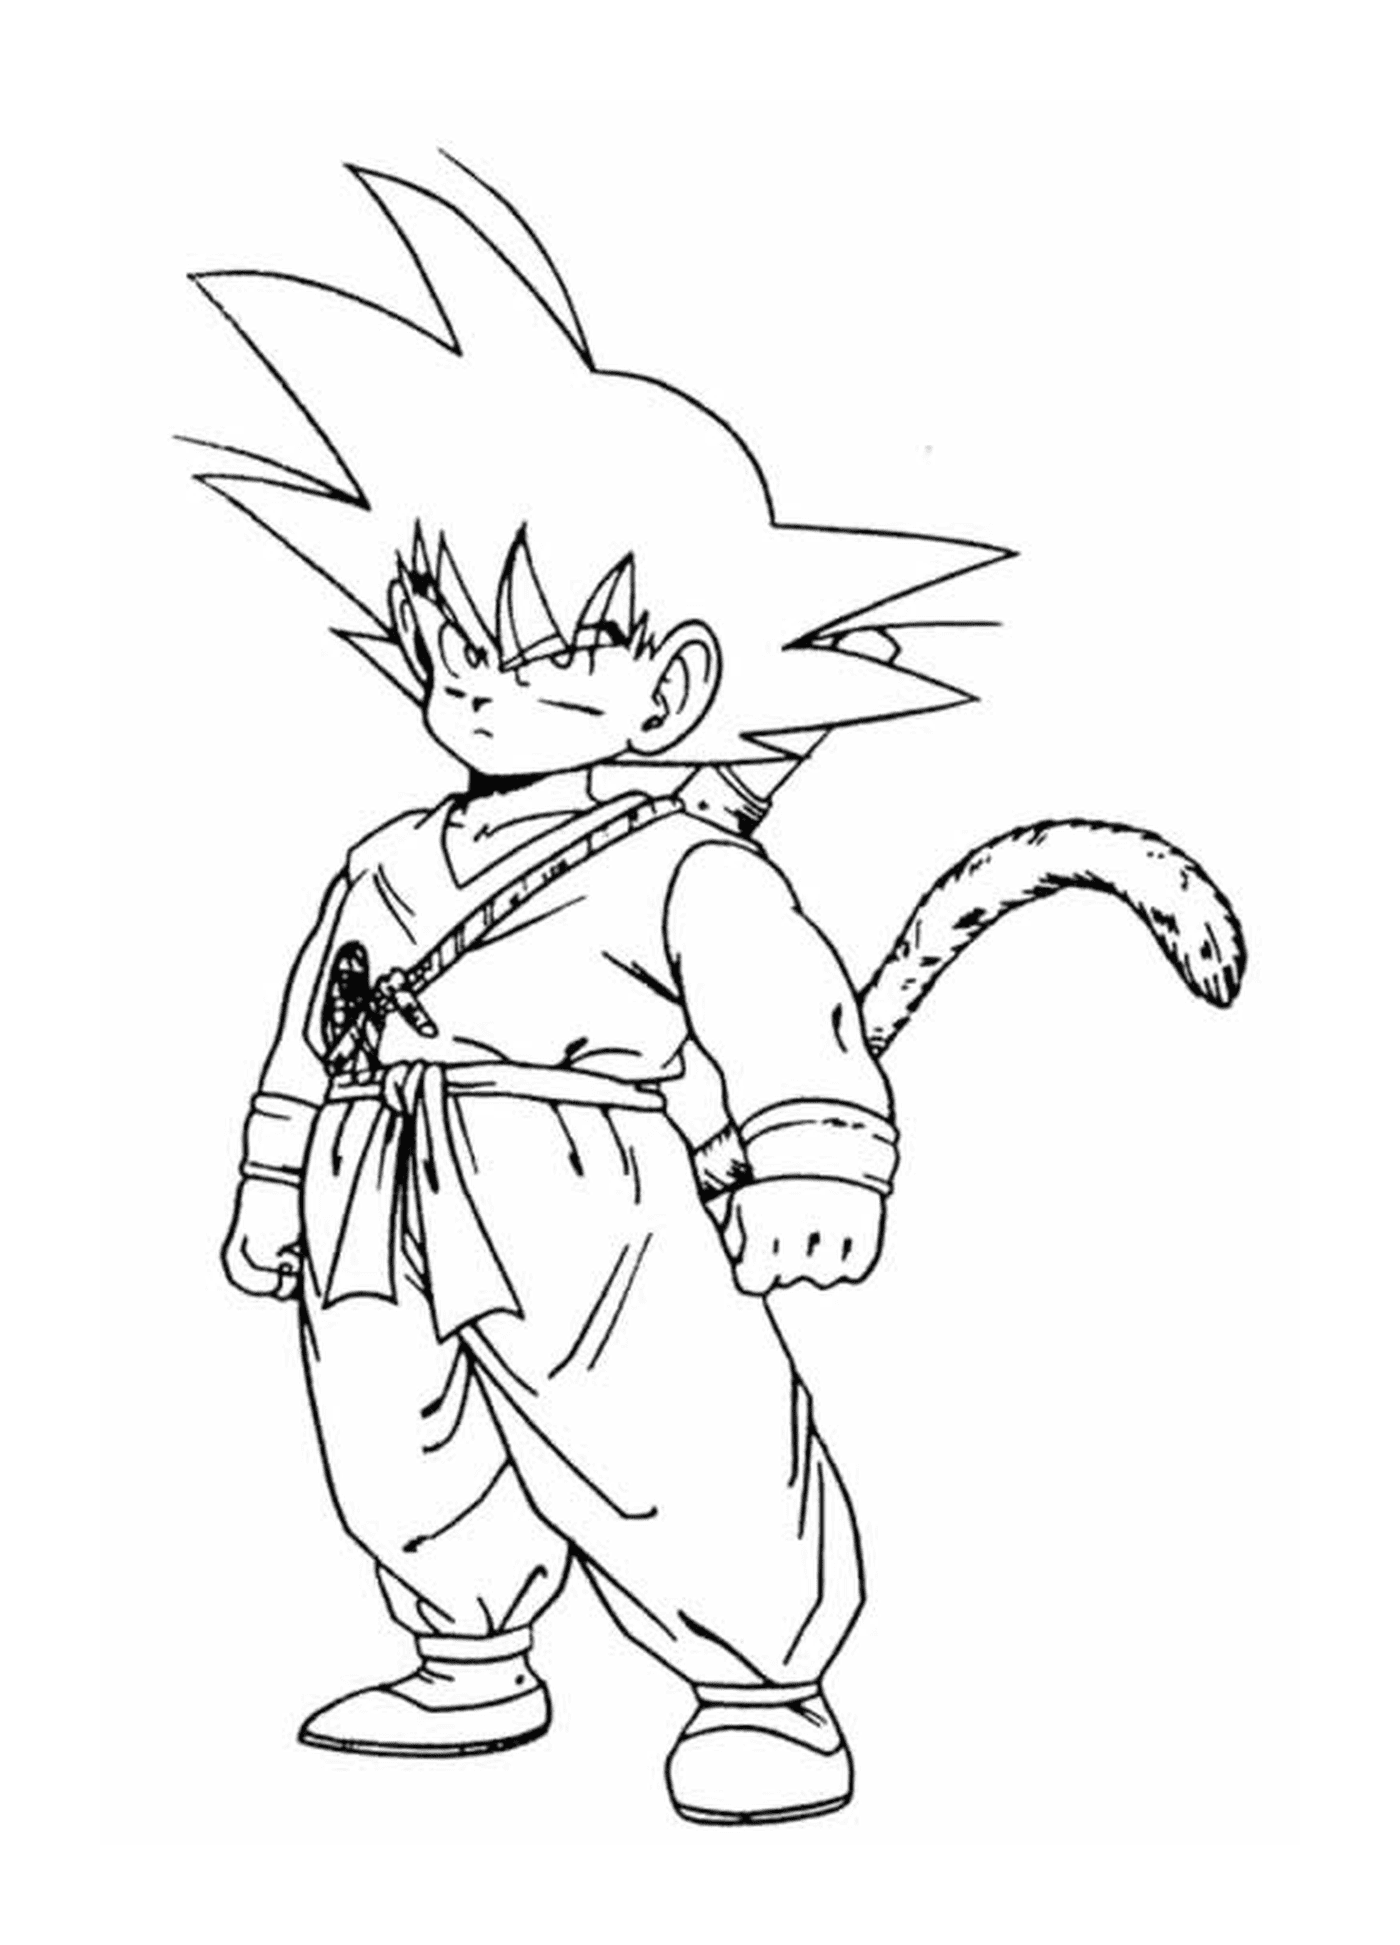  Young monkey-tailed Goku 